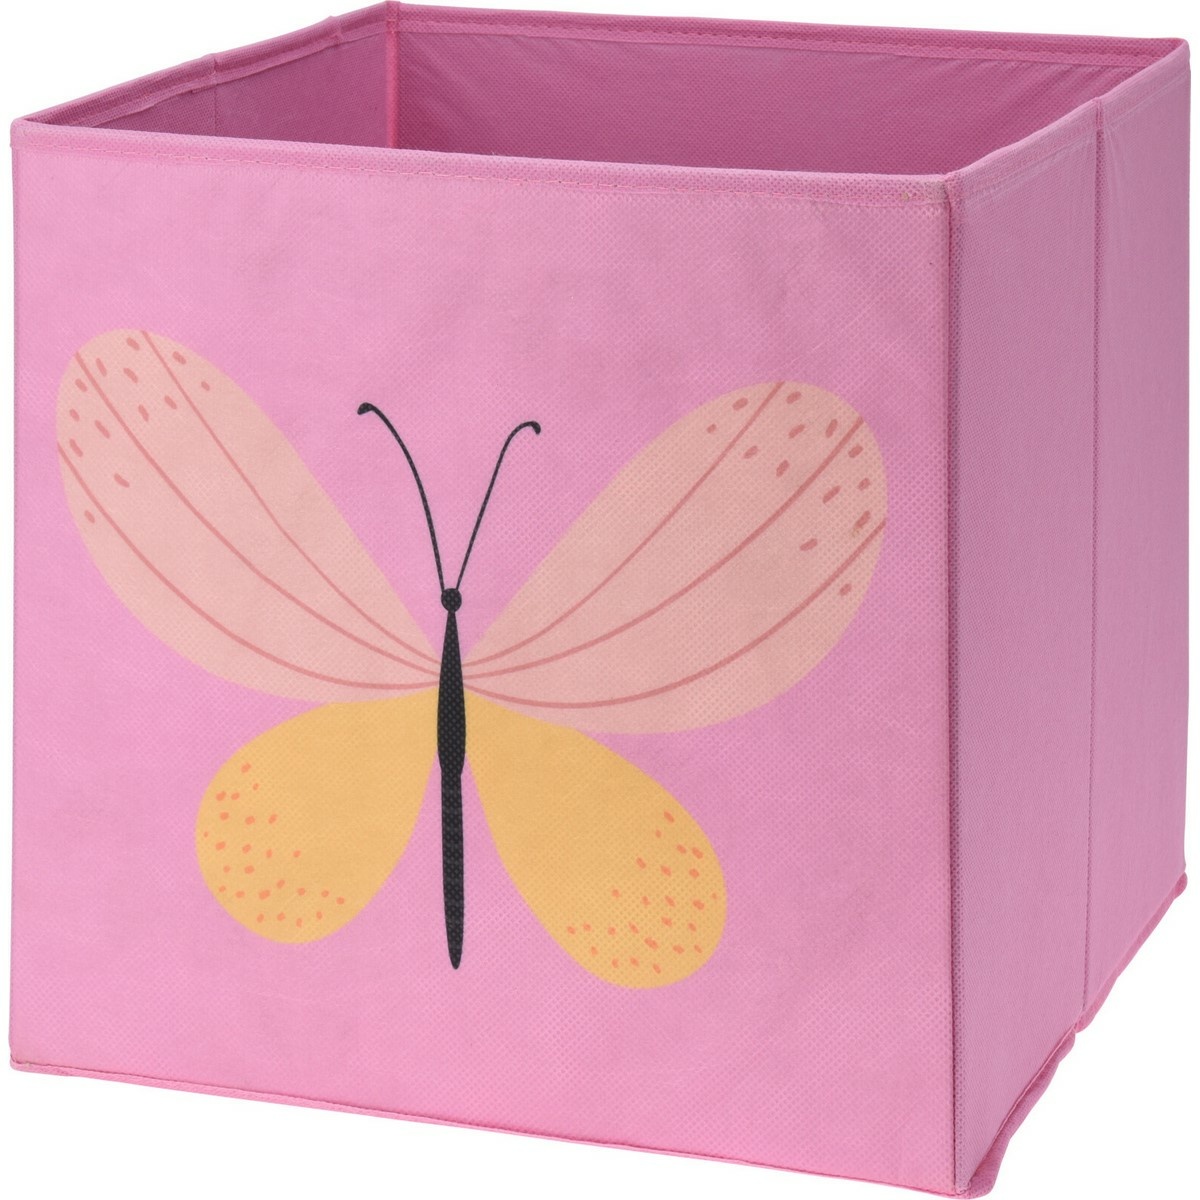 Detský textilný úložný box Motýľ, ružová, 30 x 30 x 30 cm